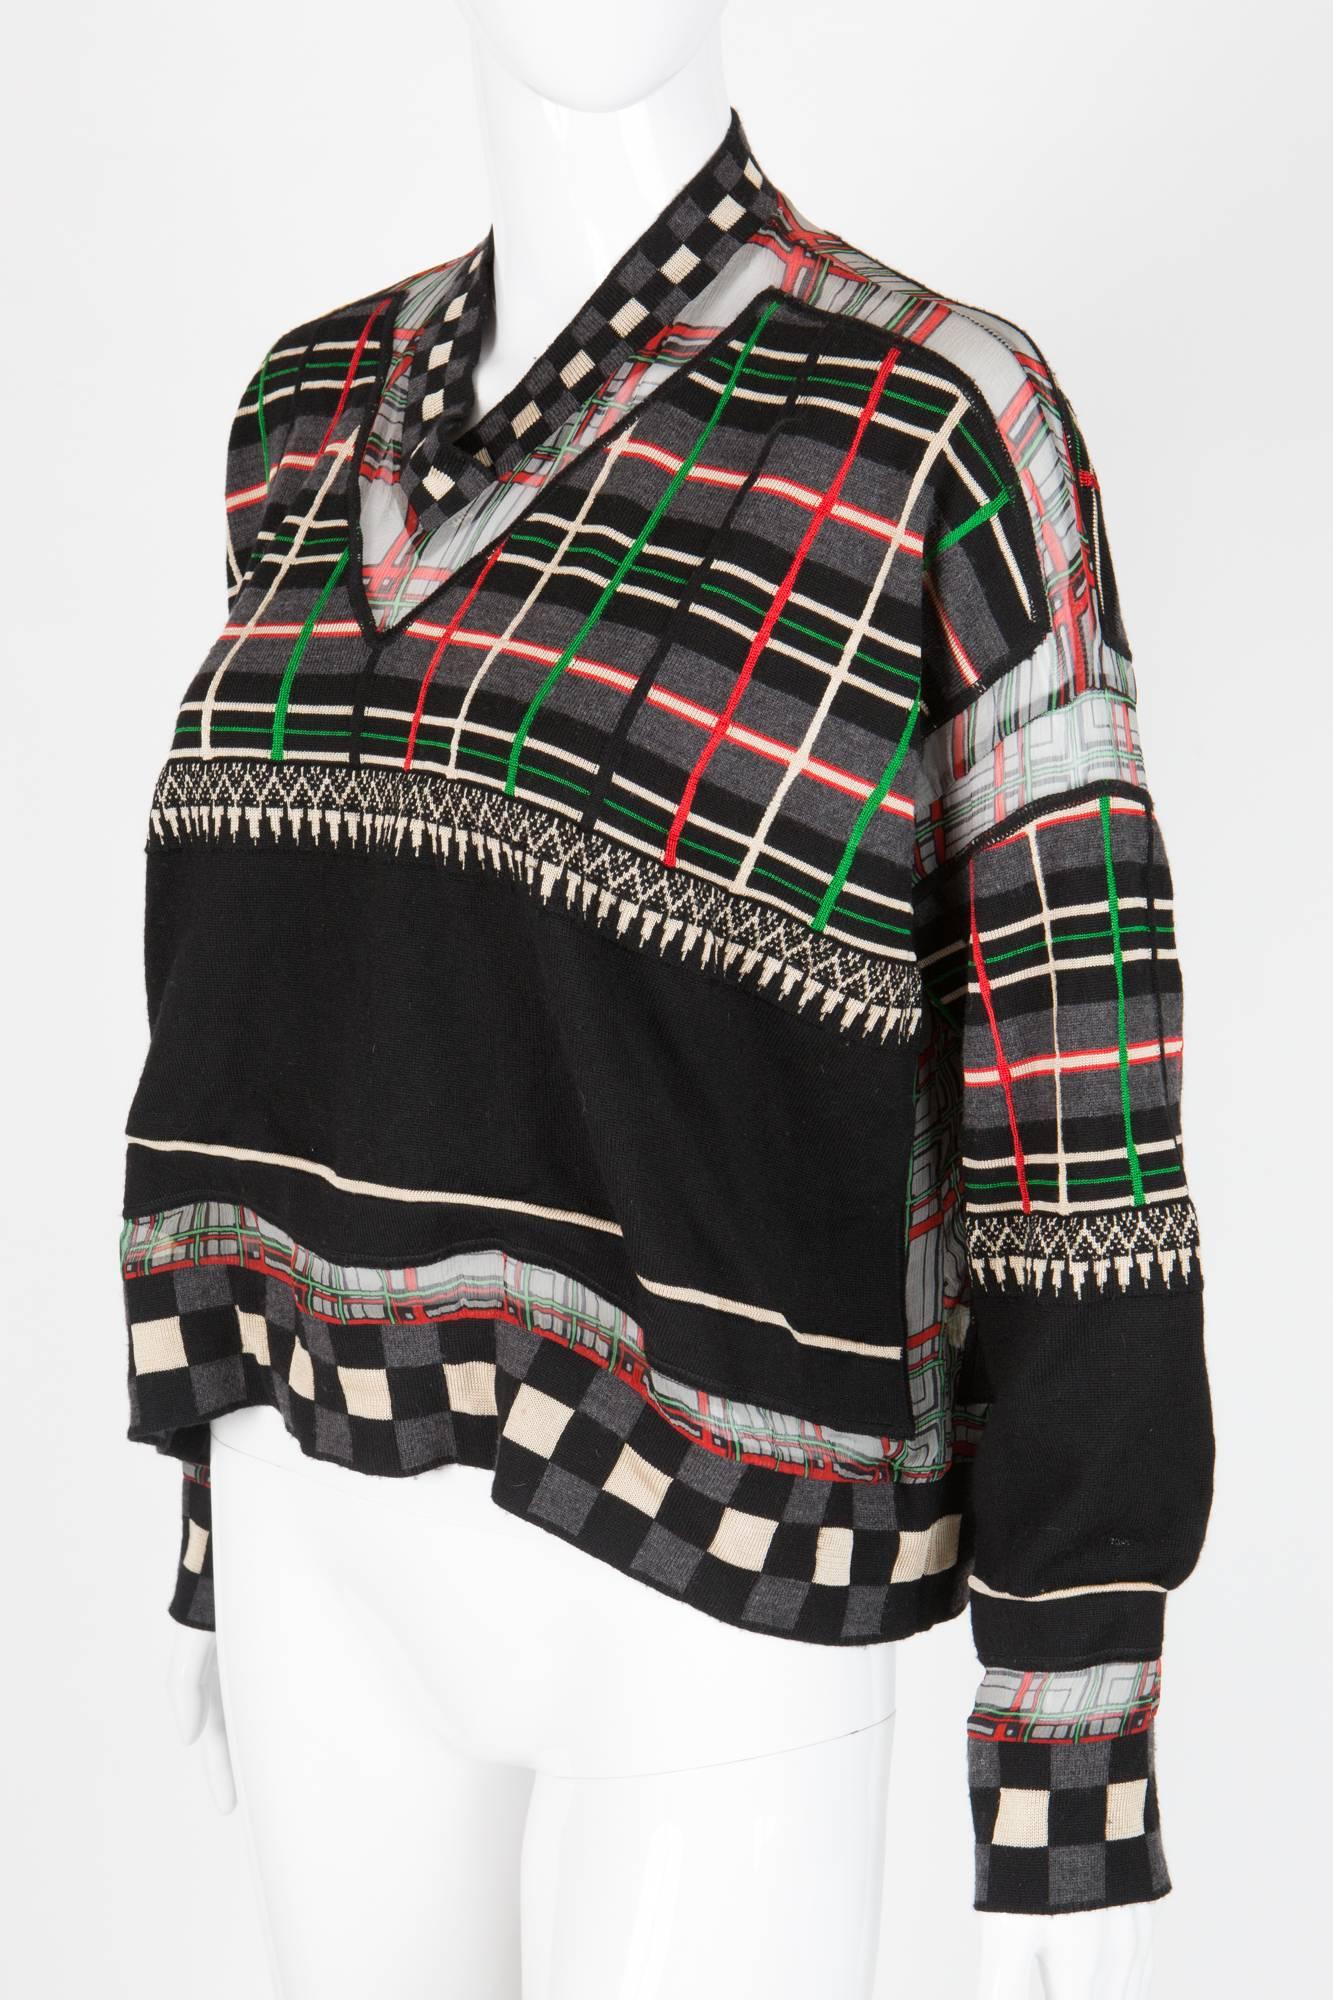 Pull en laine multicolore Jean Paul Gaultier présentant un volume surdimensionné,  détails du motif à carreaux en georgette. (60 % laine, 30 % soie, 10 % viscose)
En bon état vintage. Fabriquées en Italie.
Taille estimée 40fr/US8/UK12
Nous